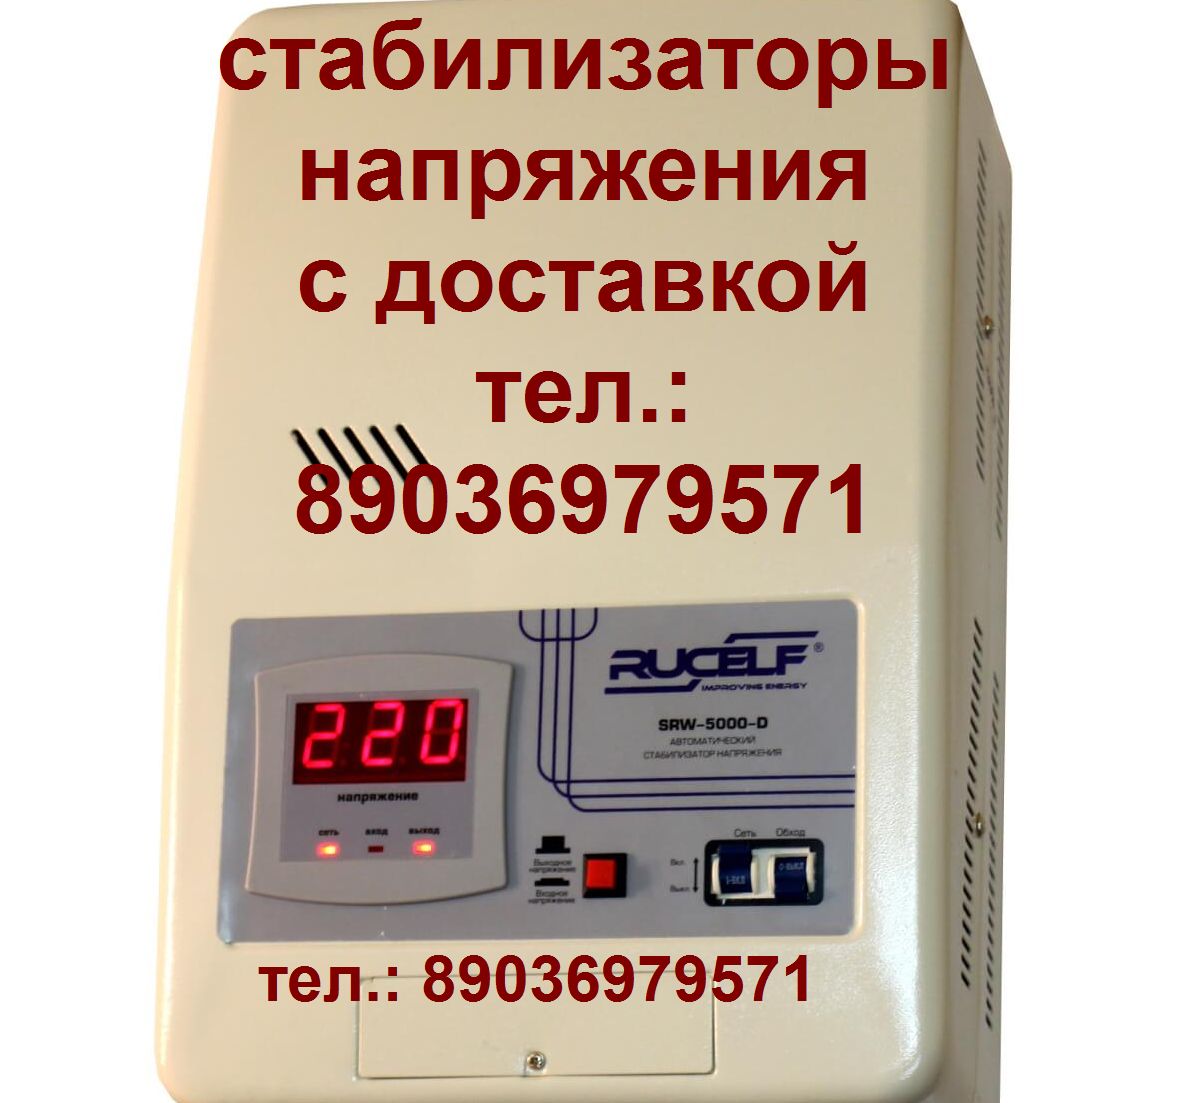 Пассик для Sharp GF-800 пассики пасики Sharp GF 800 пасик ремень в городе Москва, фото 2, Другое